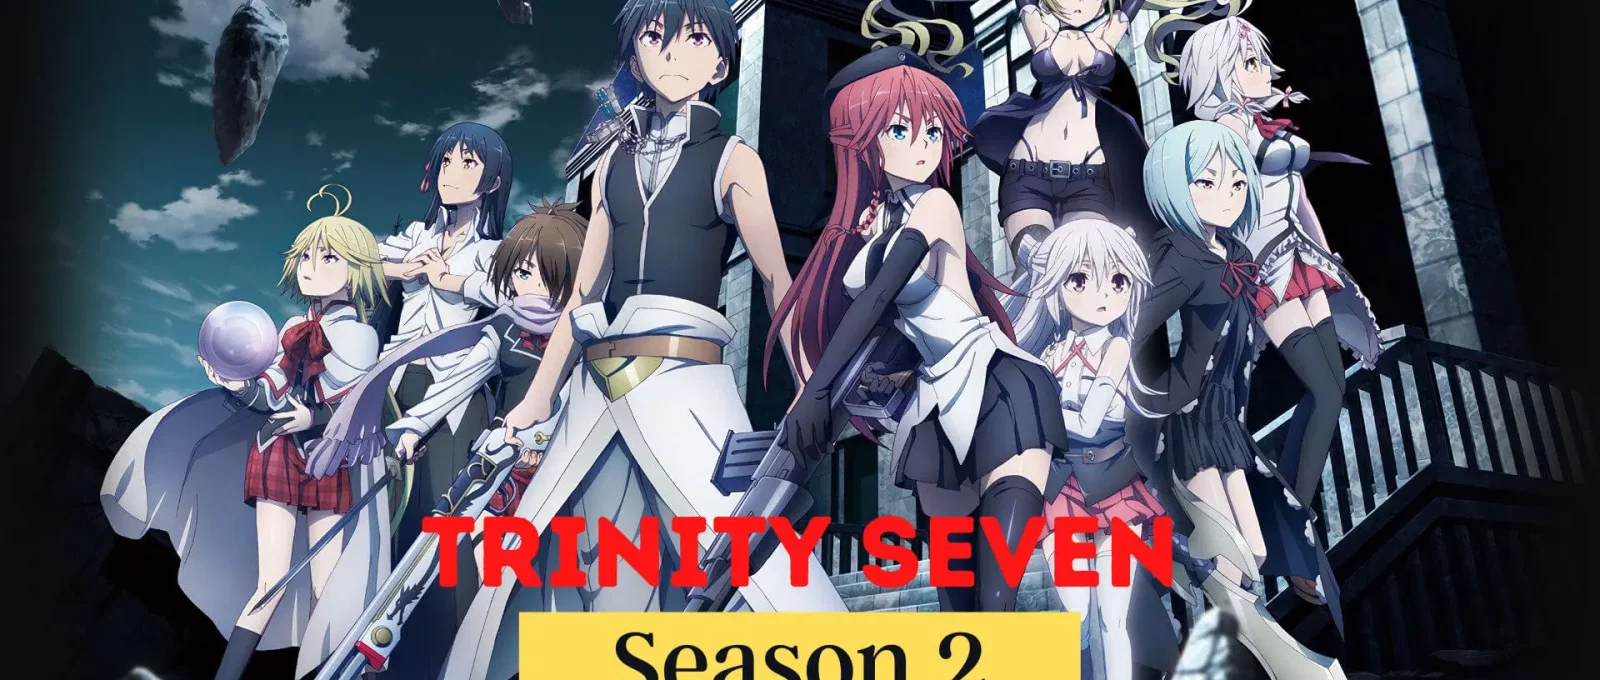 Trinity Seven Season 2